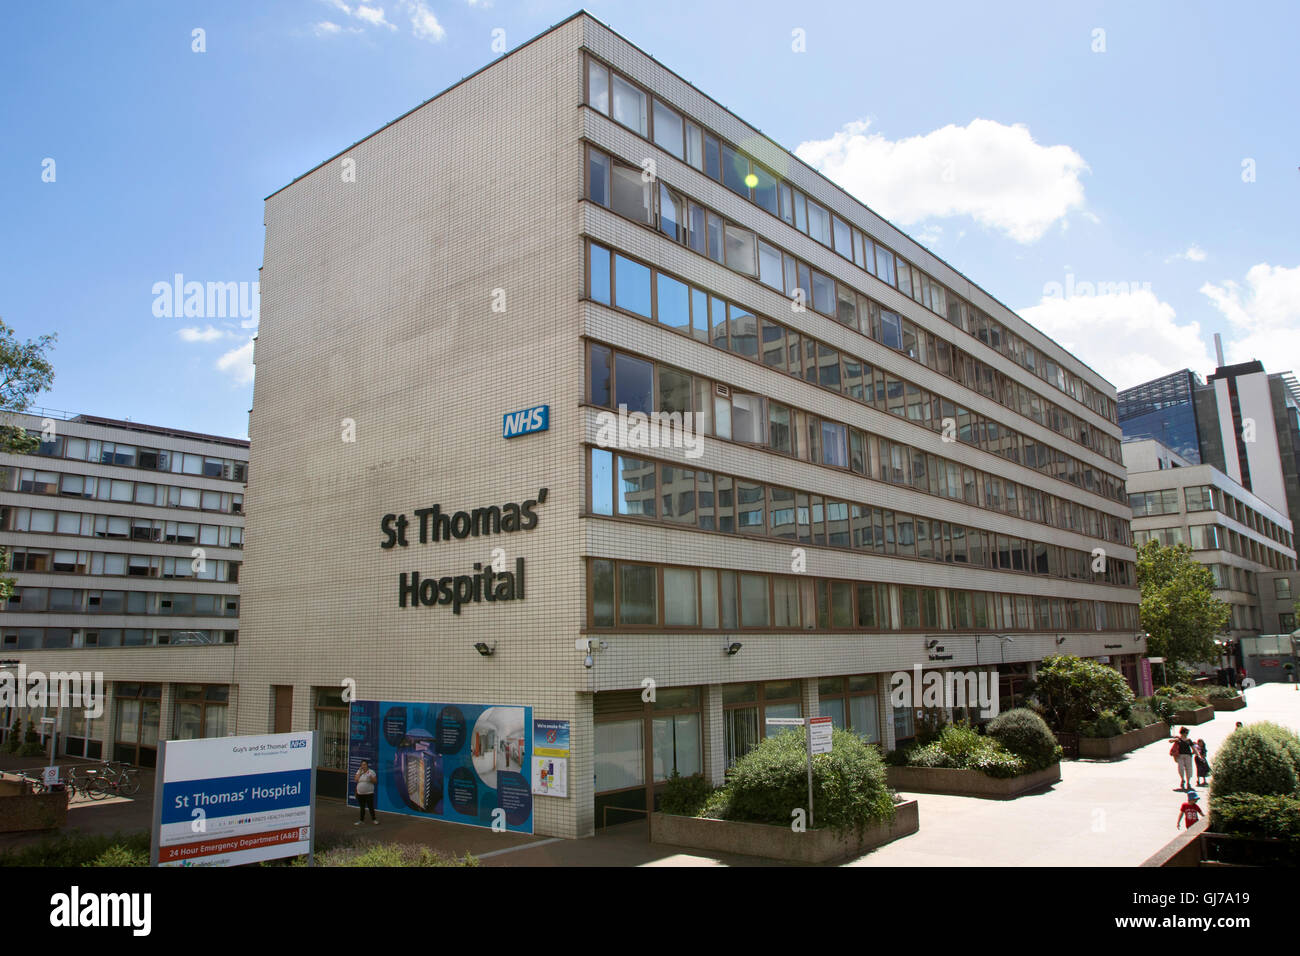 St Thomas' Hospital in London, England im Sommer während der sonnigen blauen Himmel Stockfoto